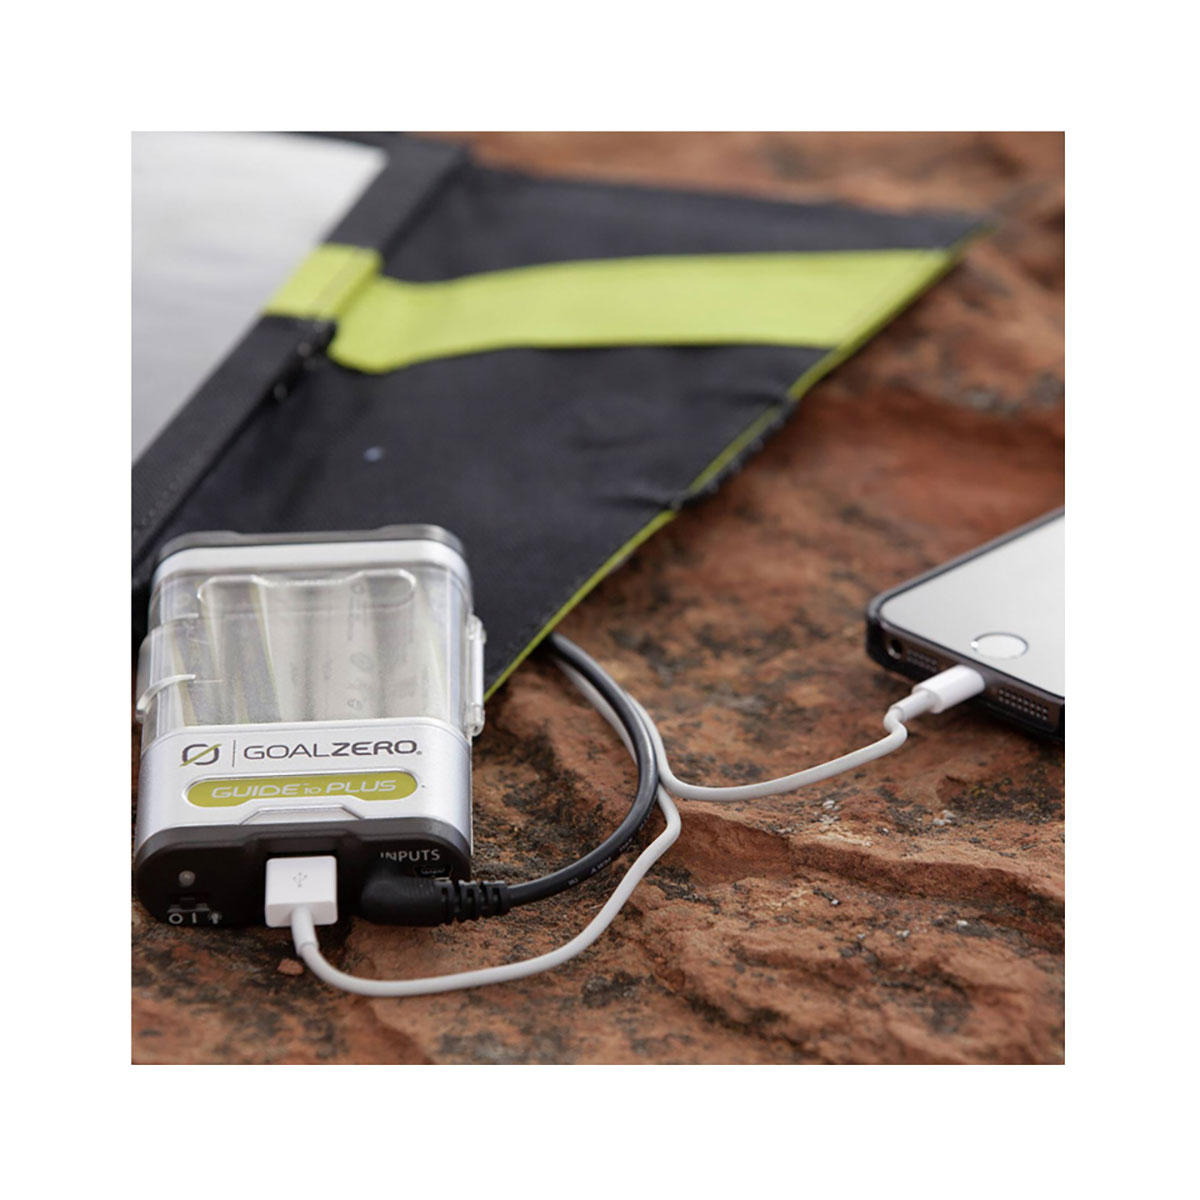 Goalzero - Guide 10 Plus Solar Recharging Kit